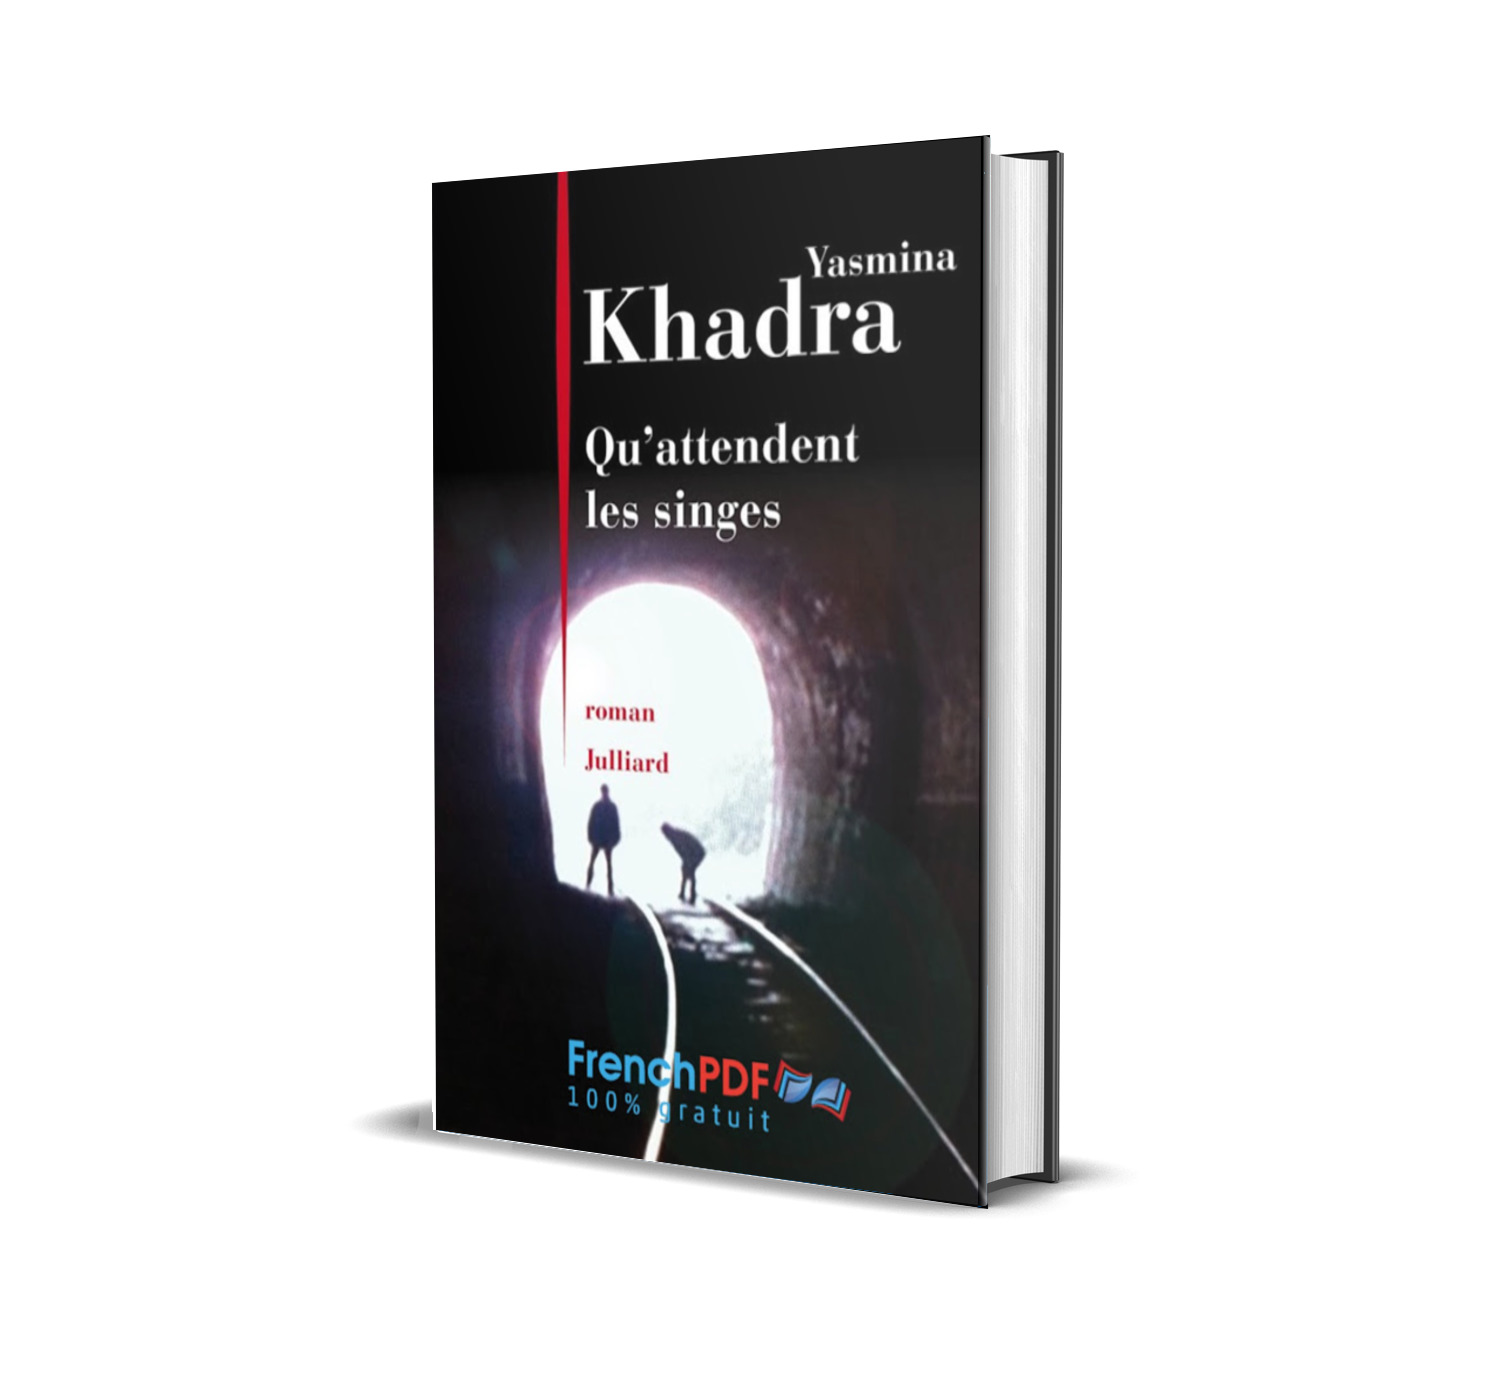 Yasmina Khadra livres - La grande collection en PDF 4